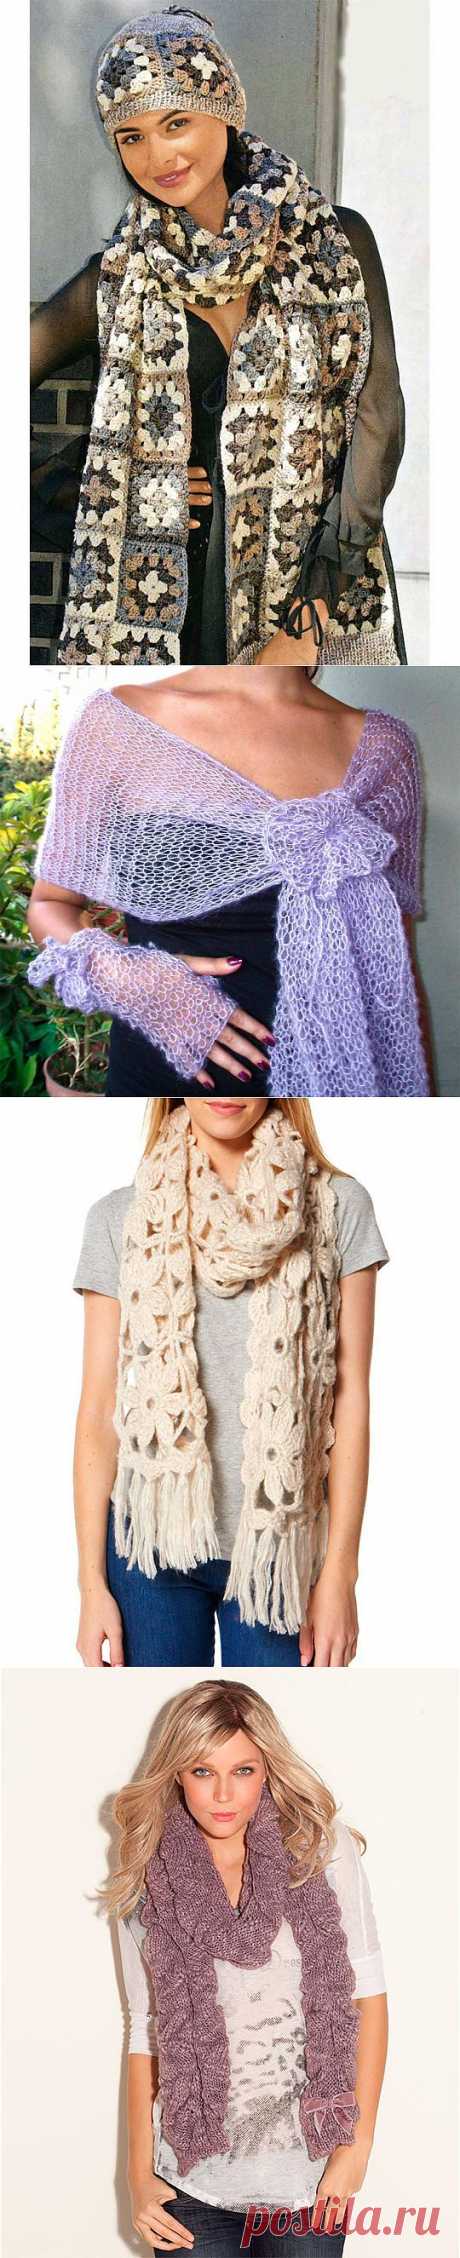 Женский вязаный шарф 2014 (45 фото) шарф спицами, крючком